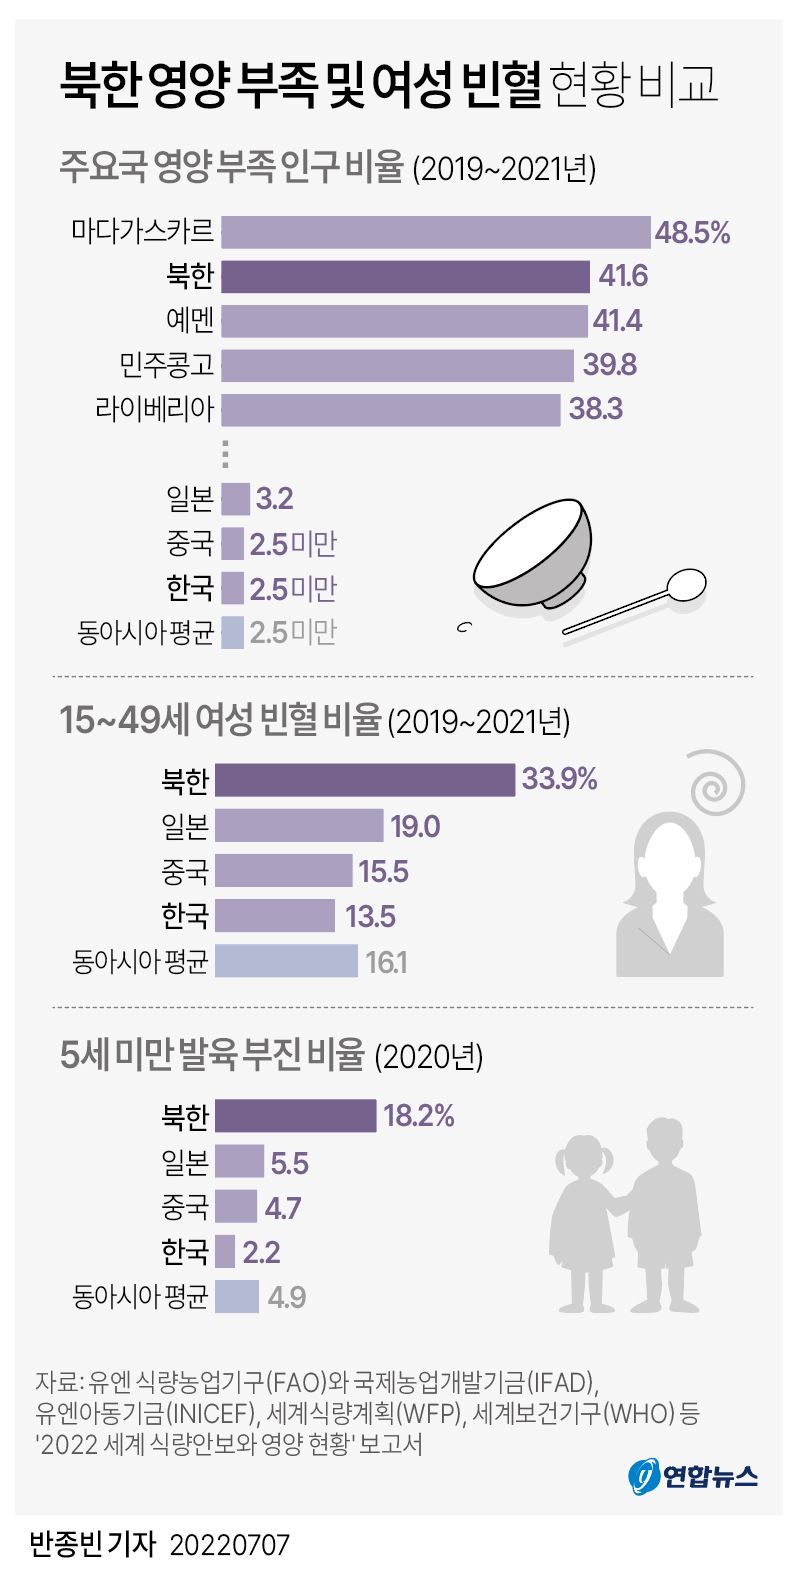 [그래픽] 북한 영양 부족 및 여성 빈혈 현황 비교